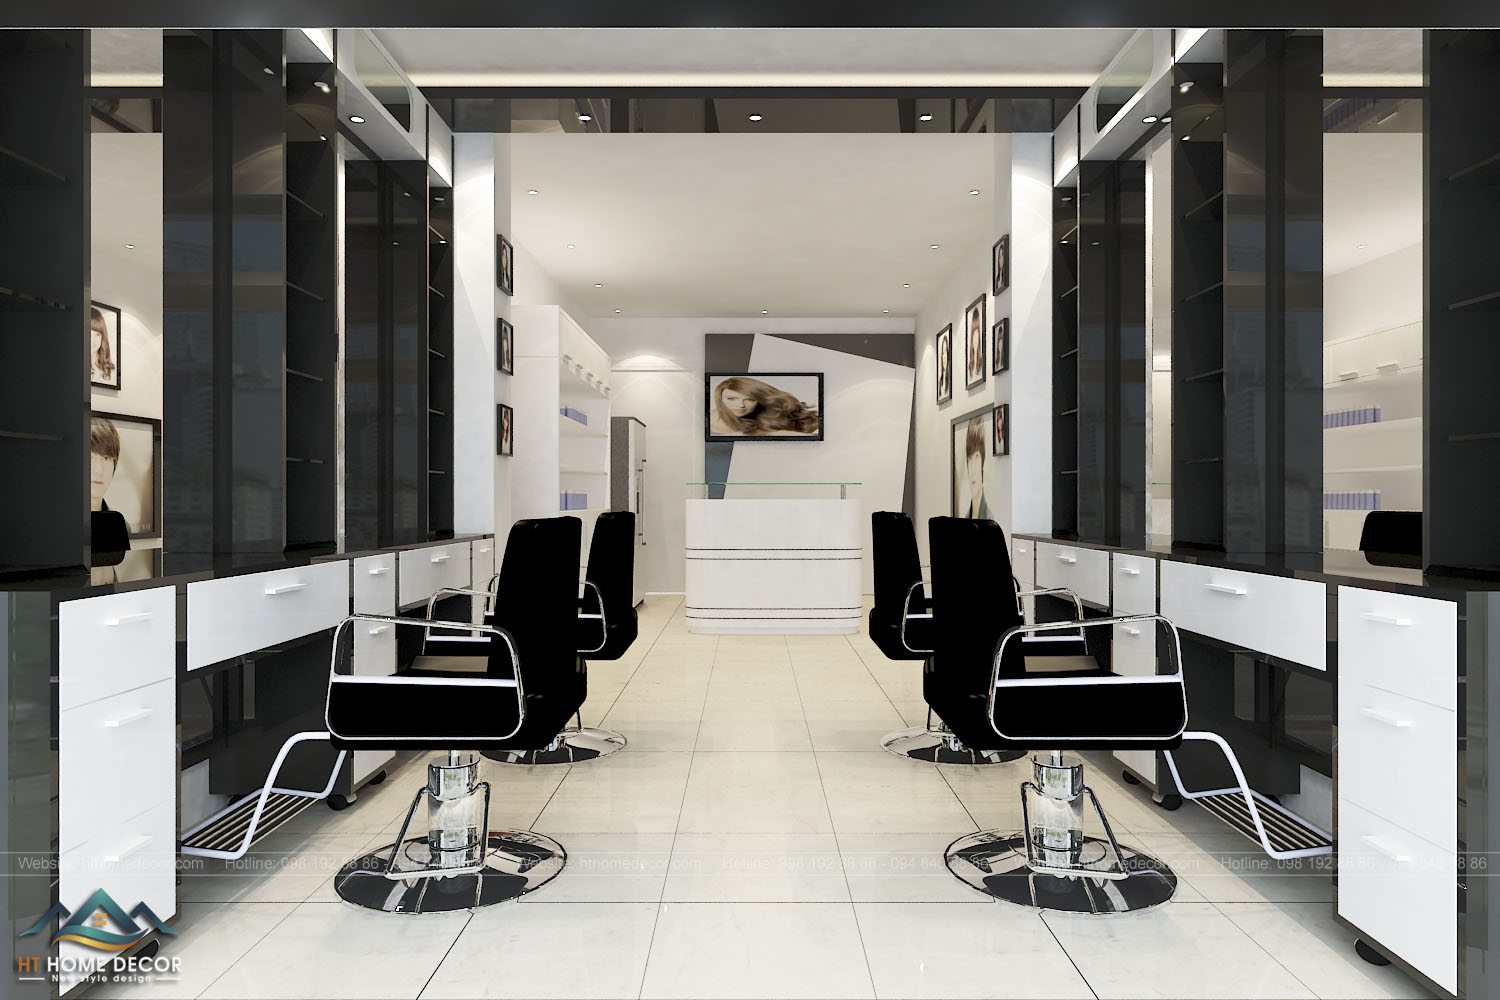 Tone màu trắng – đen thể hiện sự sang trọng và chuyên nghiệp của cửa hàng cắt tóc.